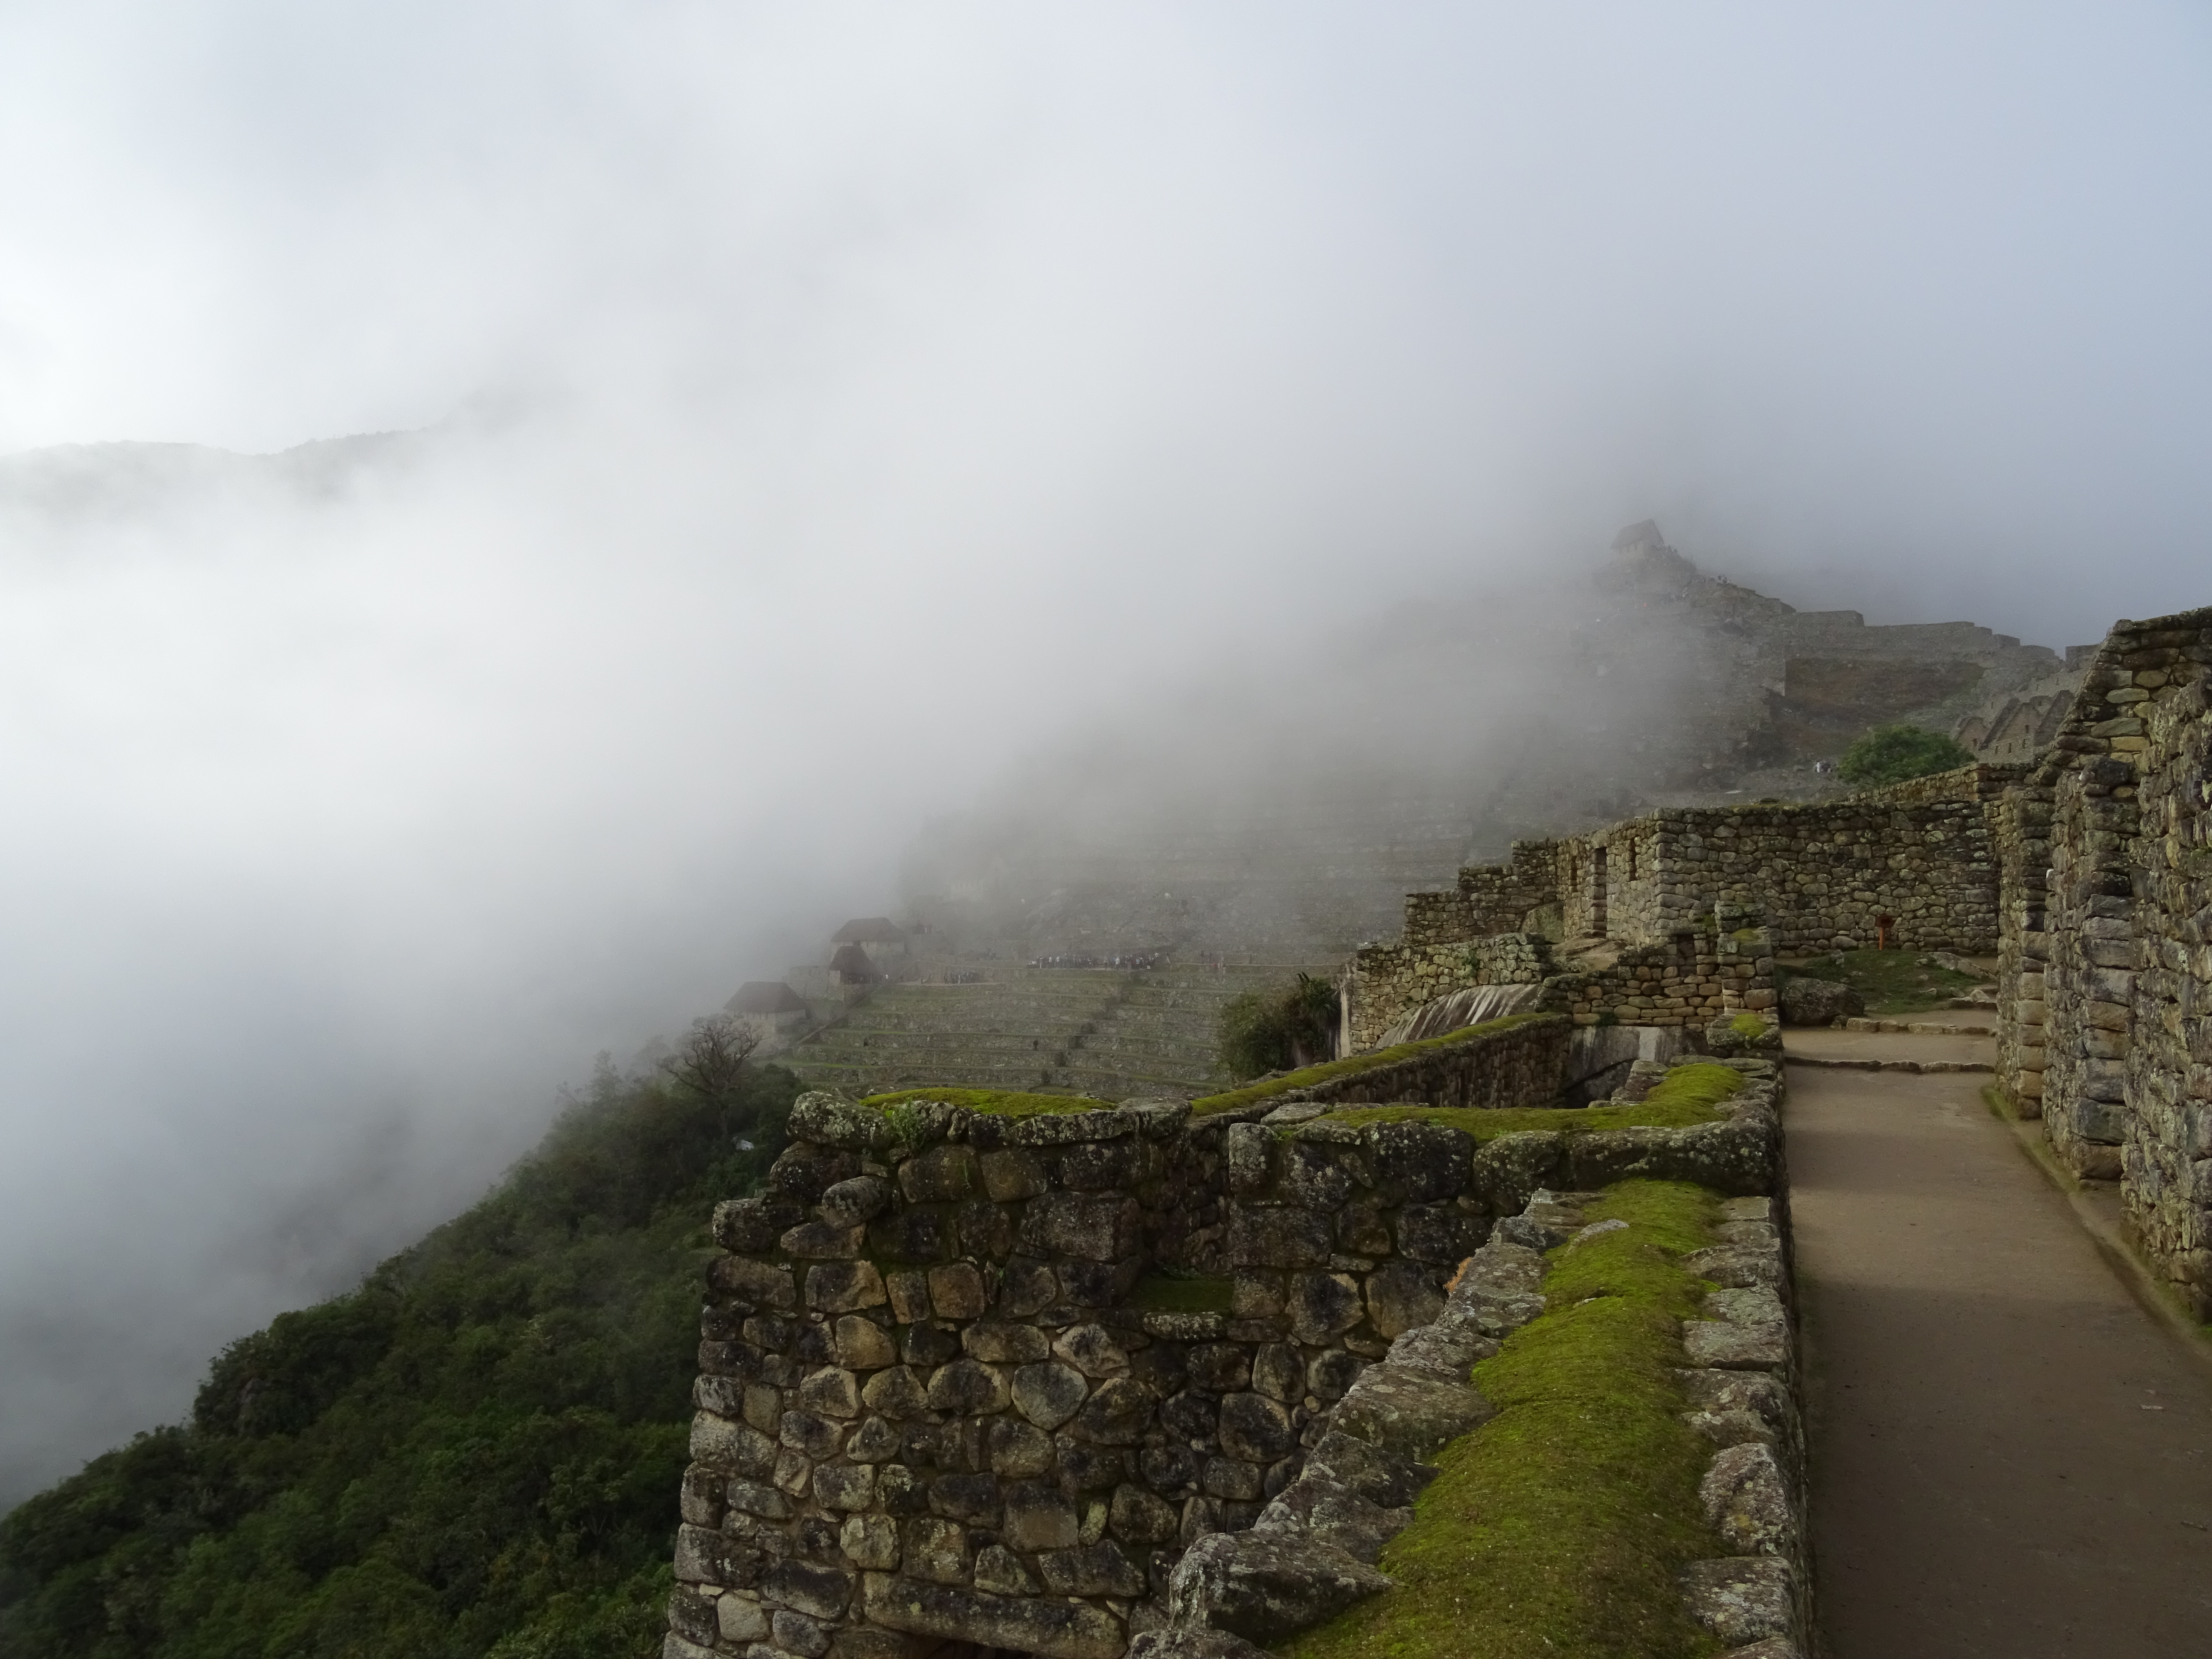 Nice Clouds over Machu Picchu